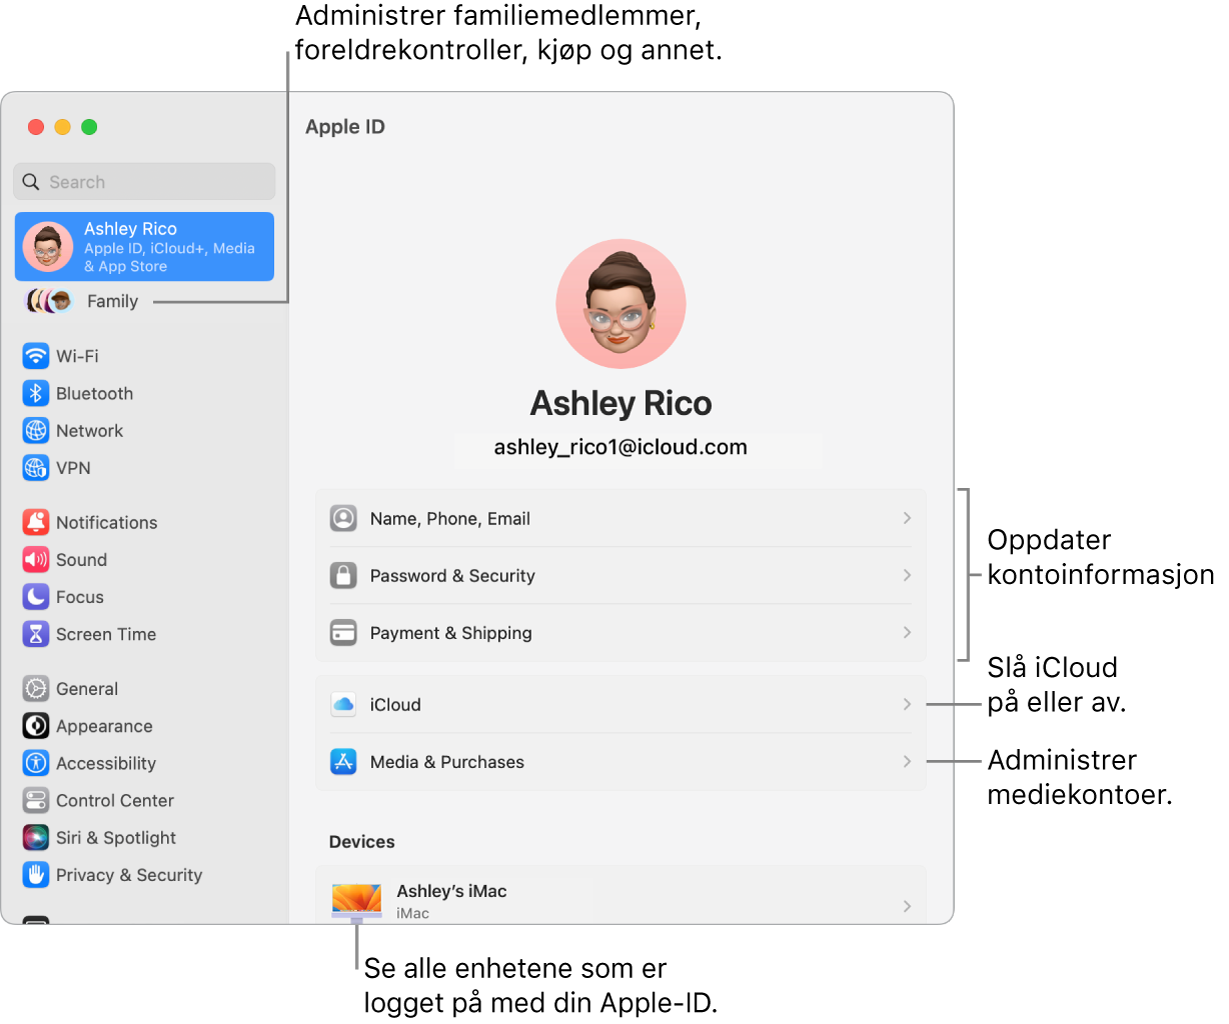 Apple-ID-innstillinger i Systeminnstillinger med forklaringer for hvordan du oppdaterer kontoinformasjon, slår av eller på iCloud-funksjoner, administrerer mediekontoer, og Familie, der du kan administrere familiemedlemmer, foreldrekontroller, kjøp og mer.